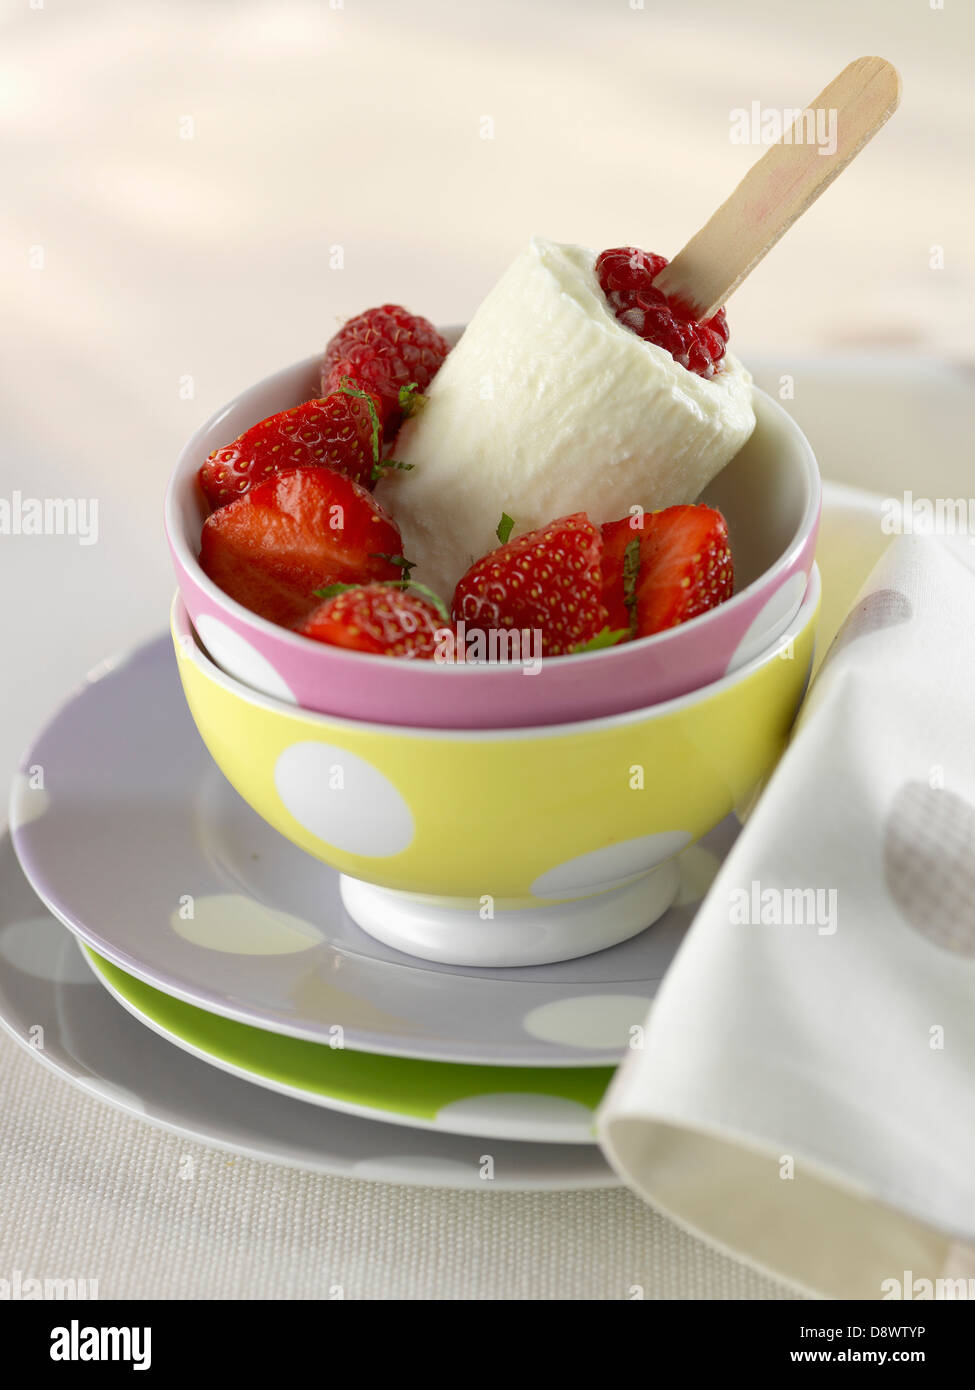 Raspberry Petit-suisse ice cream with strawberries Stock Photo